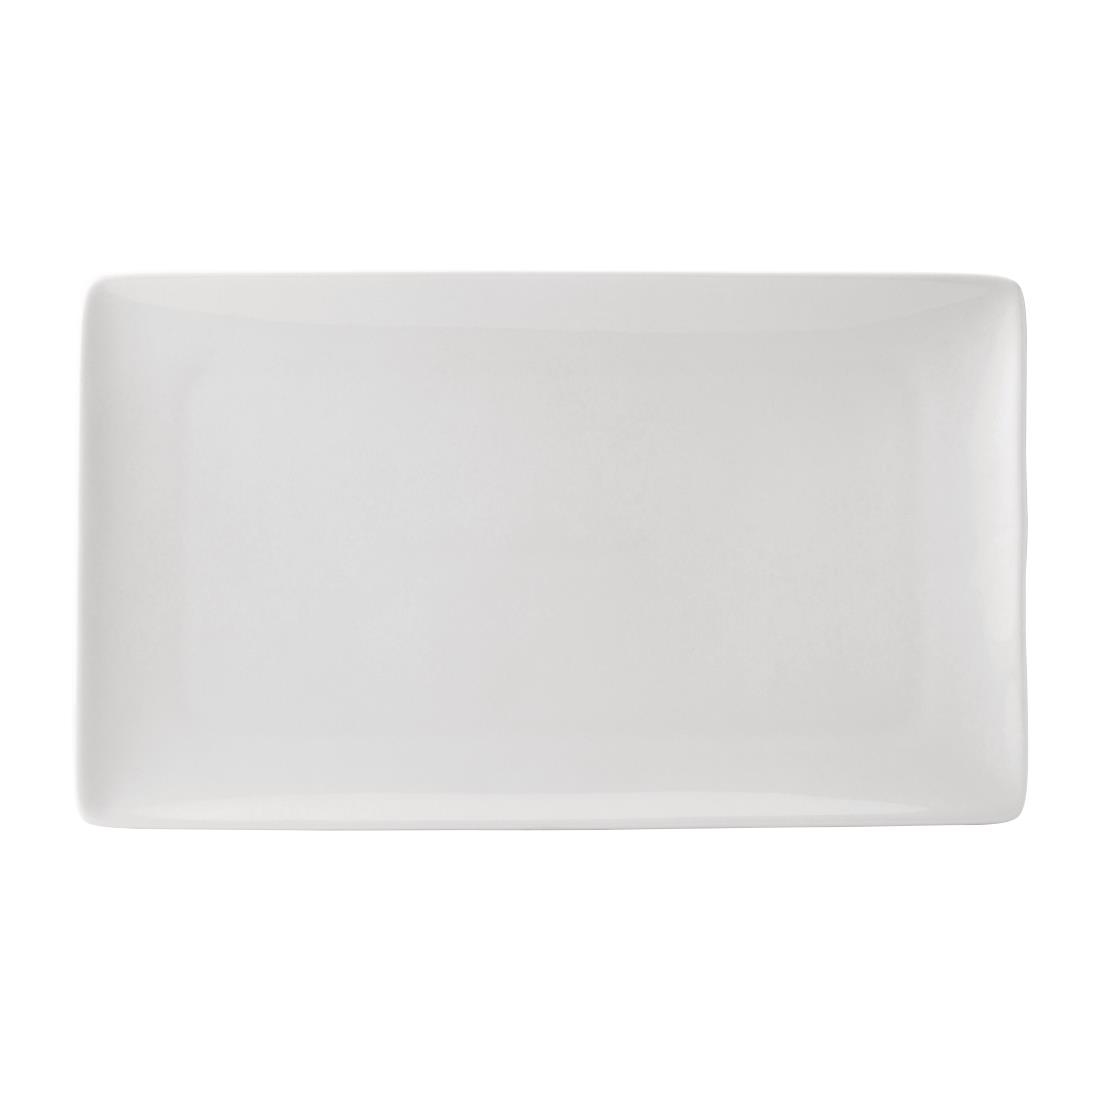 Utopia Pure White Rectangular Plates 210 x 350mm (Pack of 12)